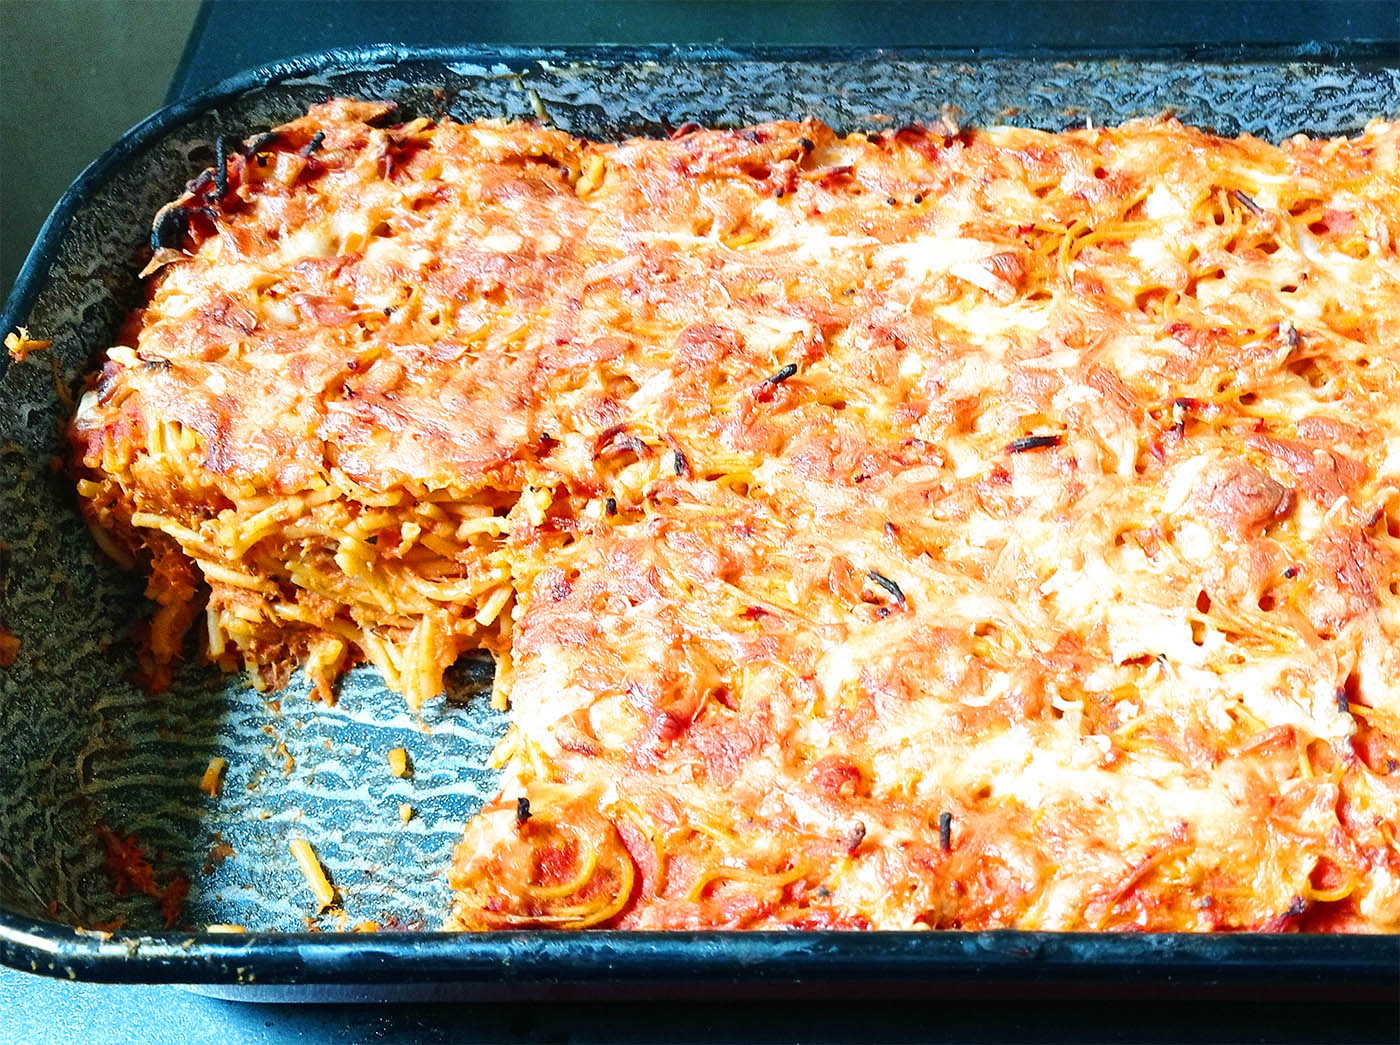 Rakott magyaros húsos spagetti, olaszos lendülettel